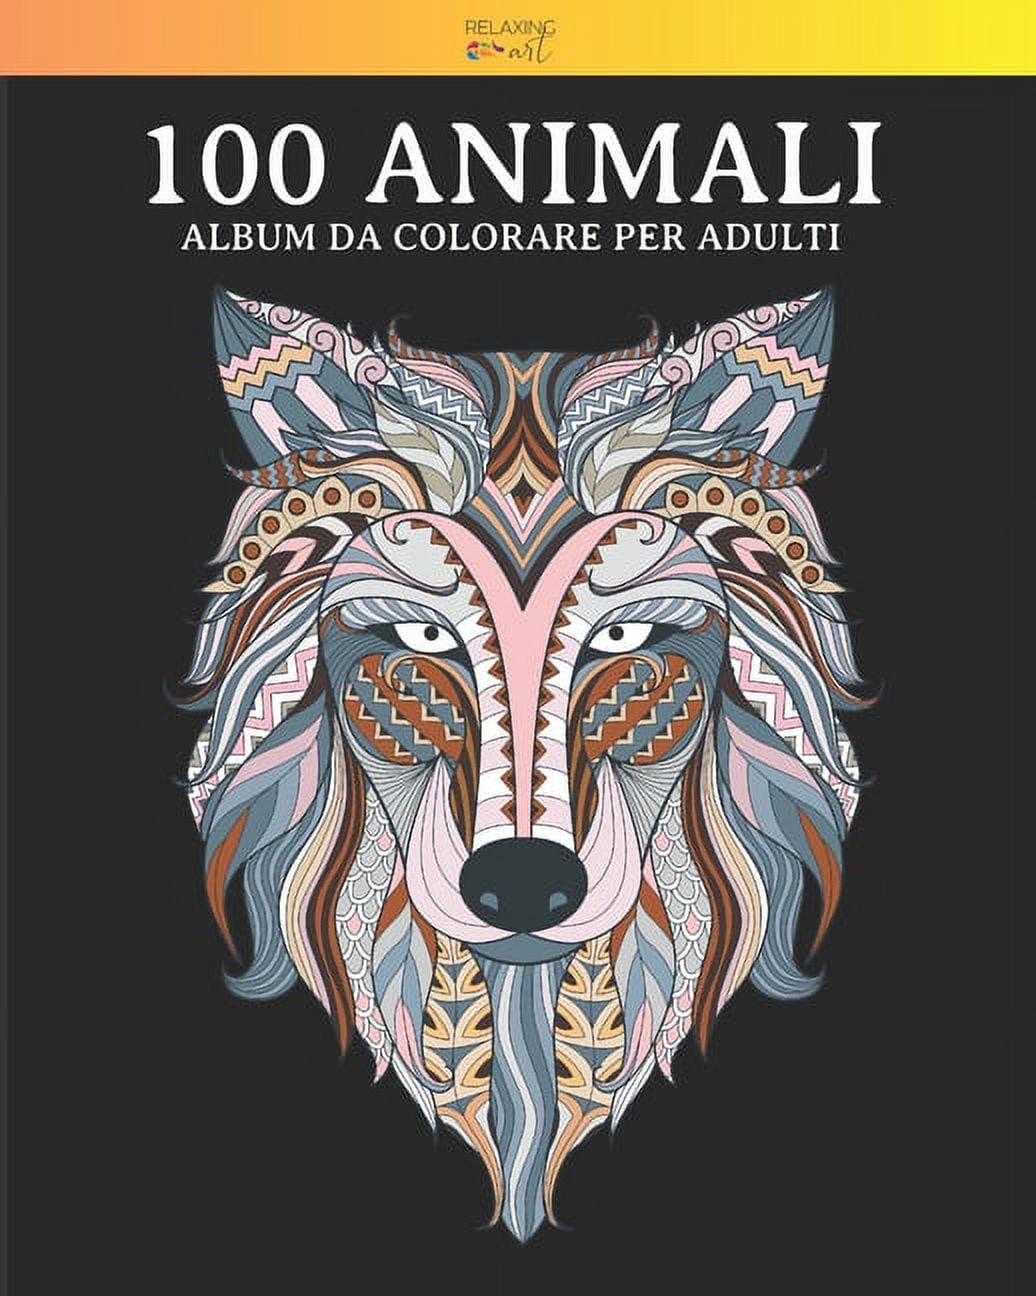 100 Animali Da Colorare: 100 Animali - Album da colorare per adulti: Vol. 4  - 100 fantastici disegni di animali, decorati con bellissimi mandala.  Ottimo passatempo per adulti con disegni antistress. ( 